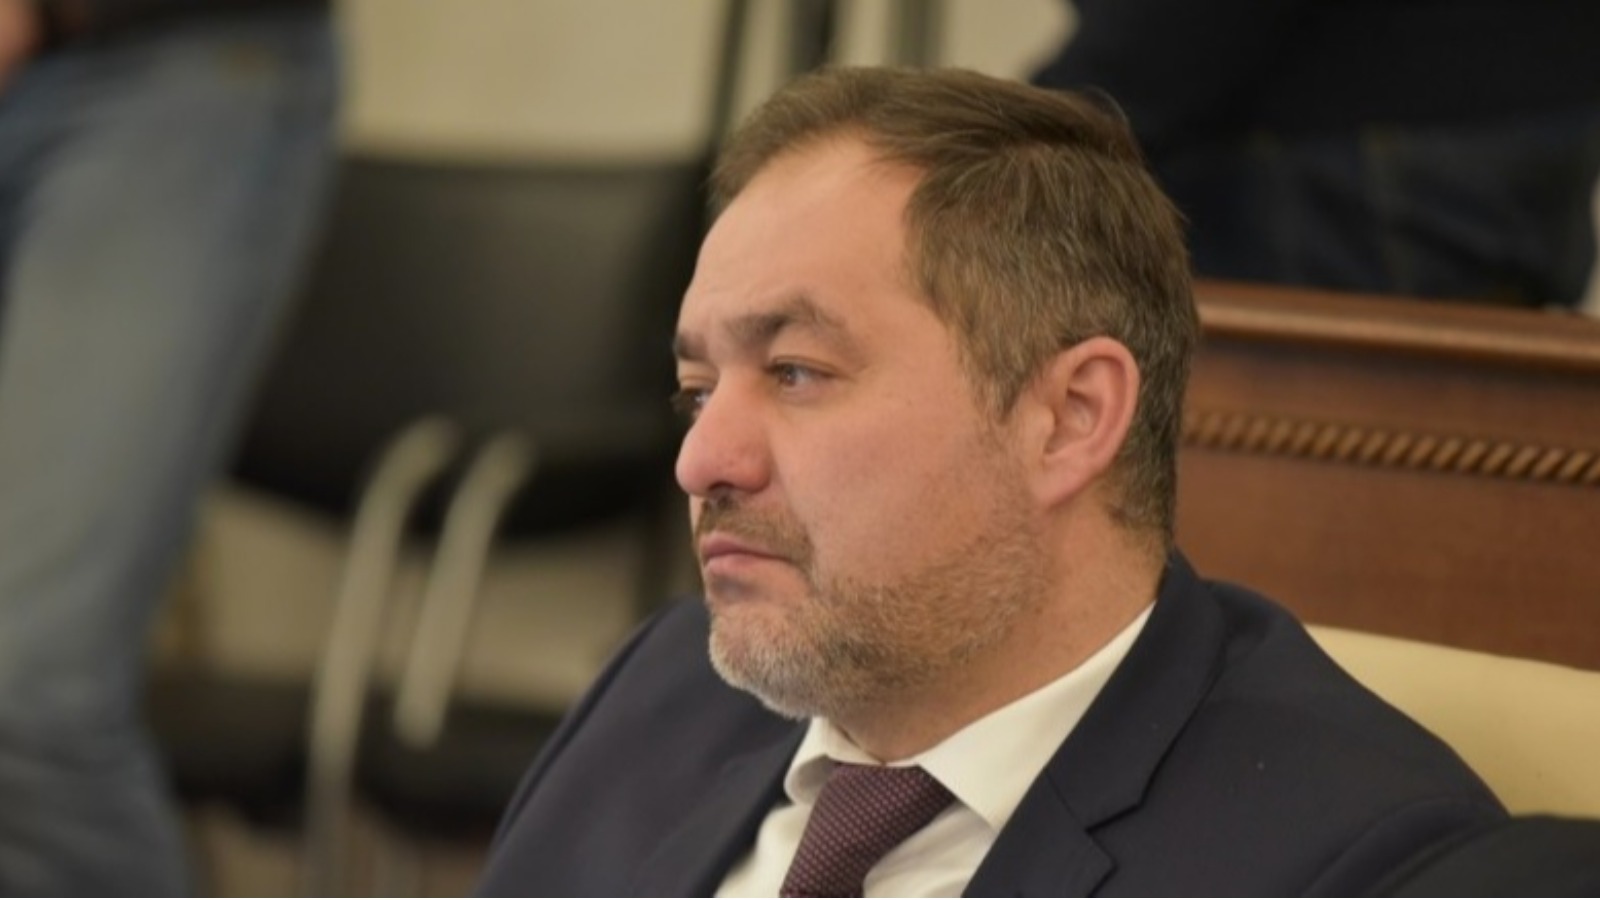 СМИ сообщили о задержании бывшего директора алтайского "СтройГАЗа"